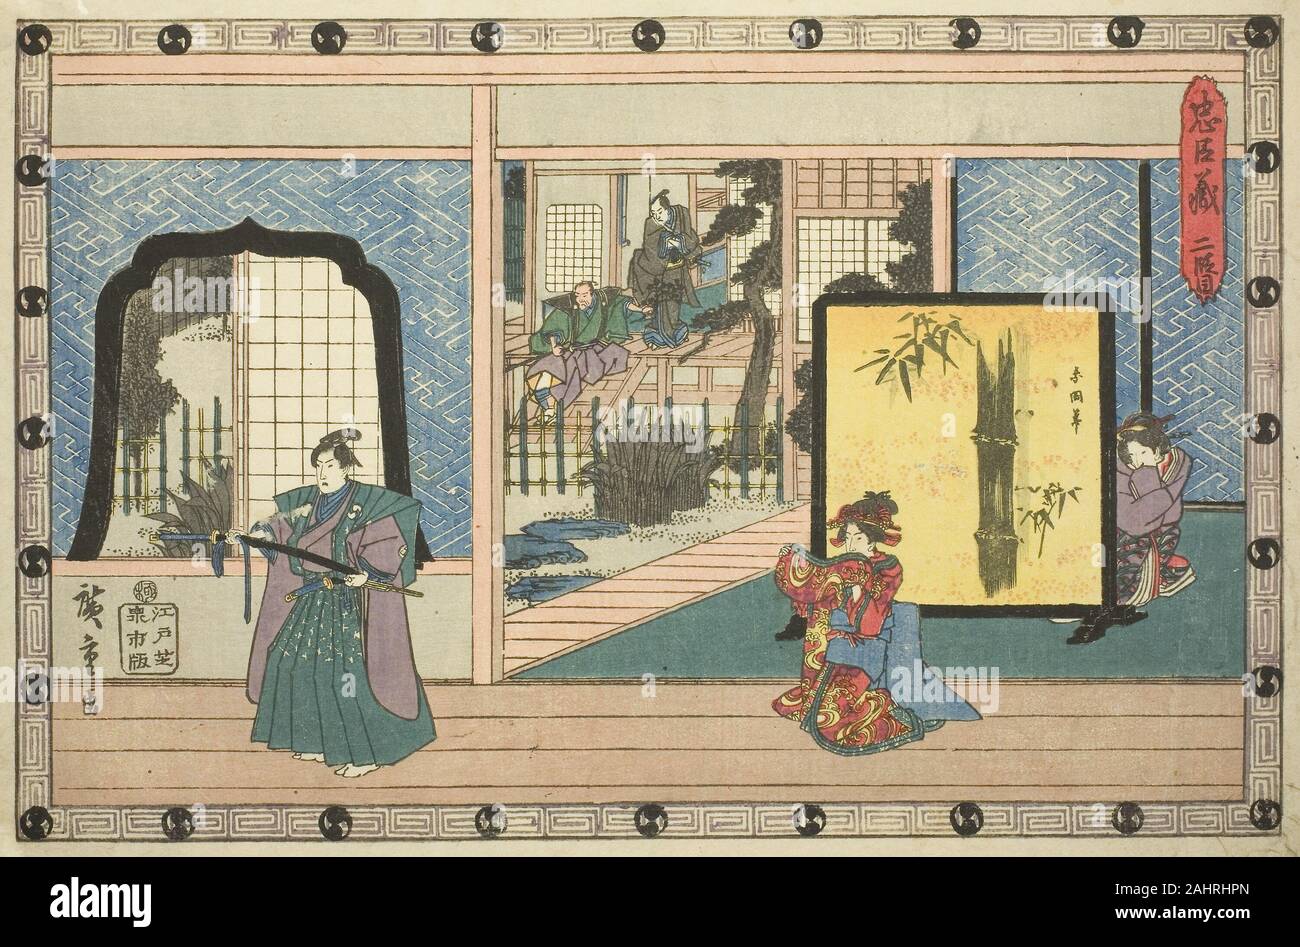 Utagawa Hiroshige. Acte 2 (Nidanme), de la série La vengeance de la Loyal  les retenues (Chushingura). 1829-1844. Le Japon. Estampe oban couleur ;  comme dans la version de cette scène Shunsho, le